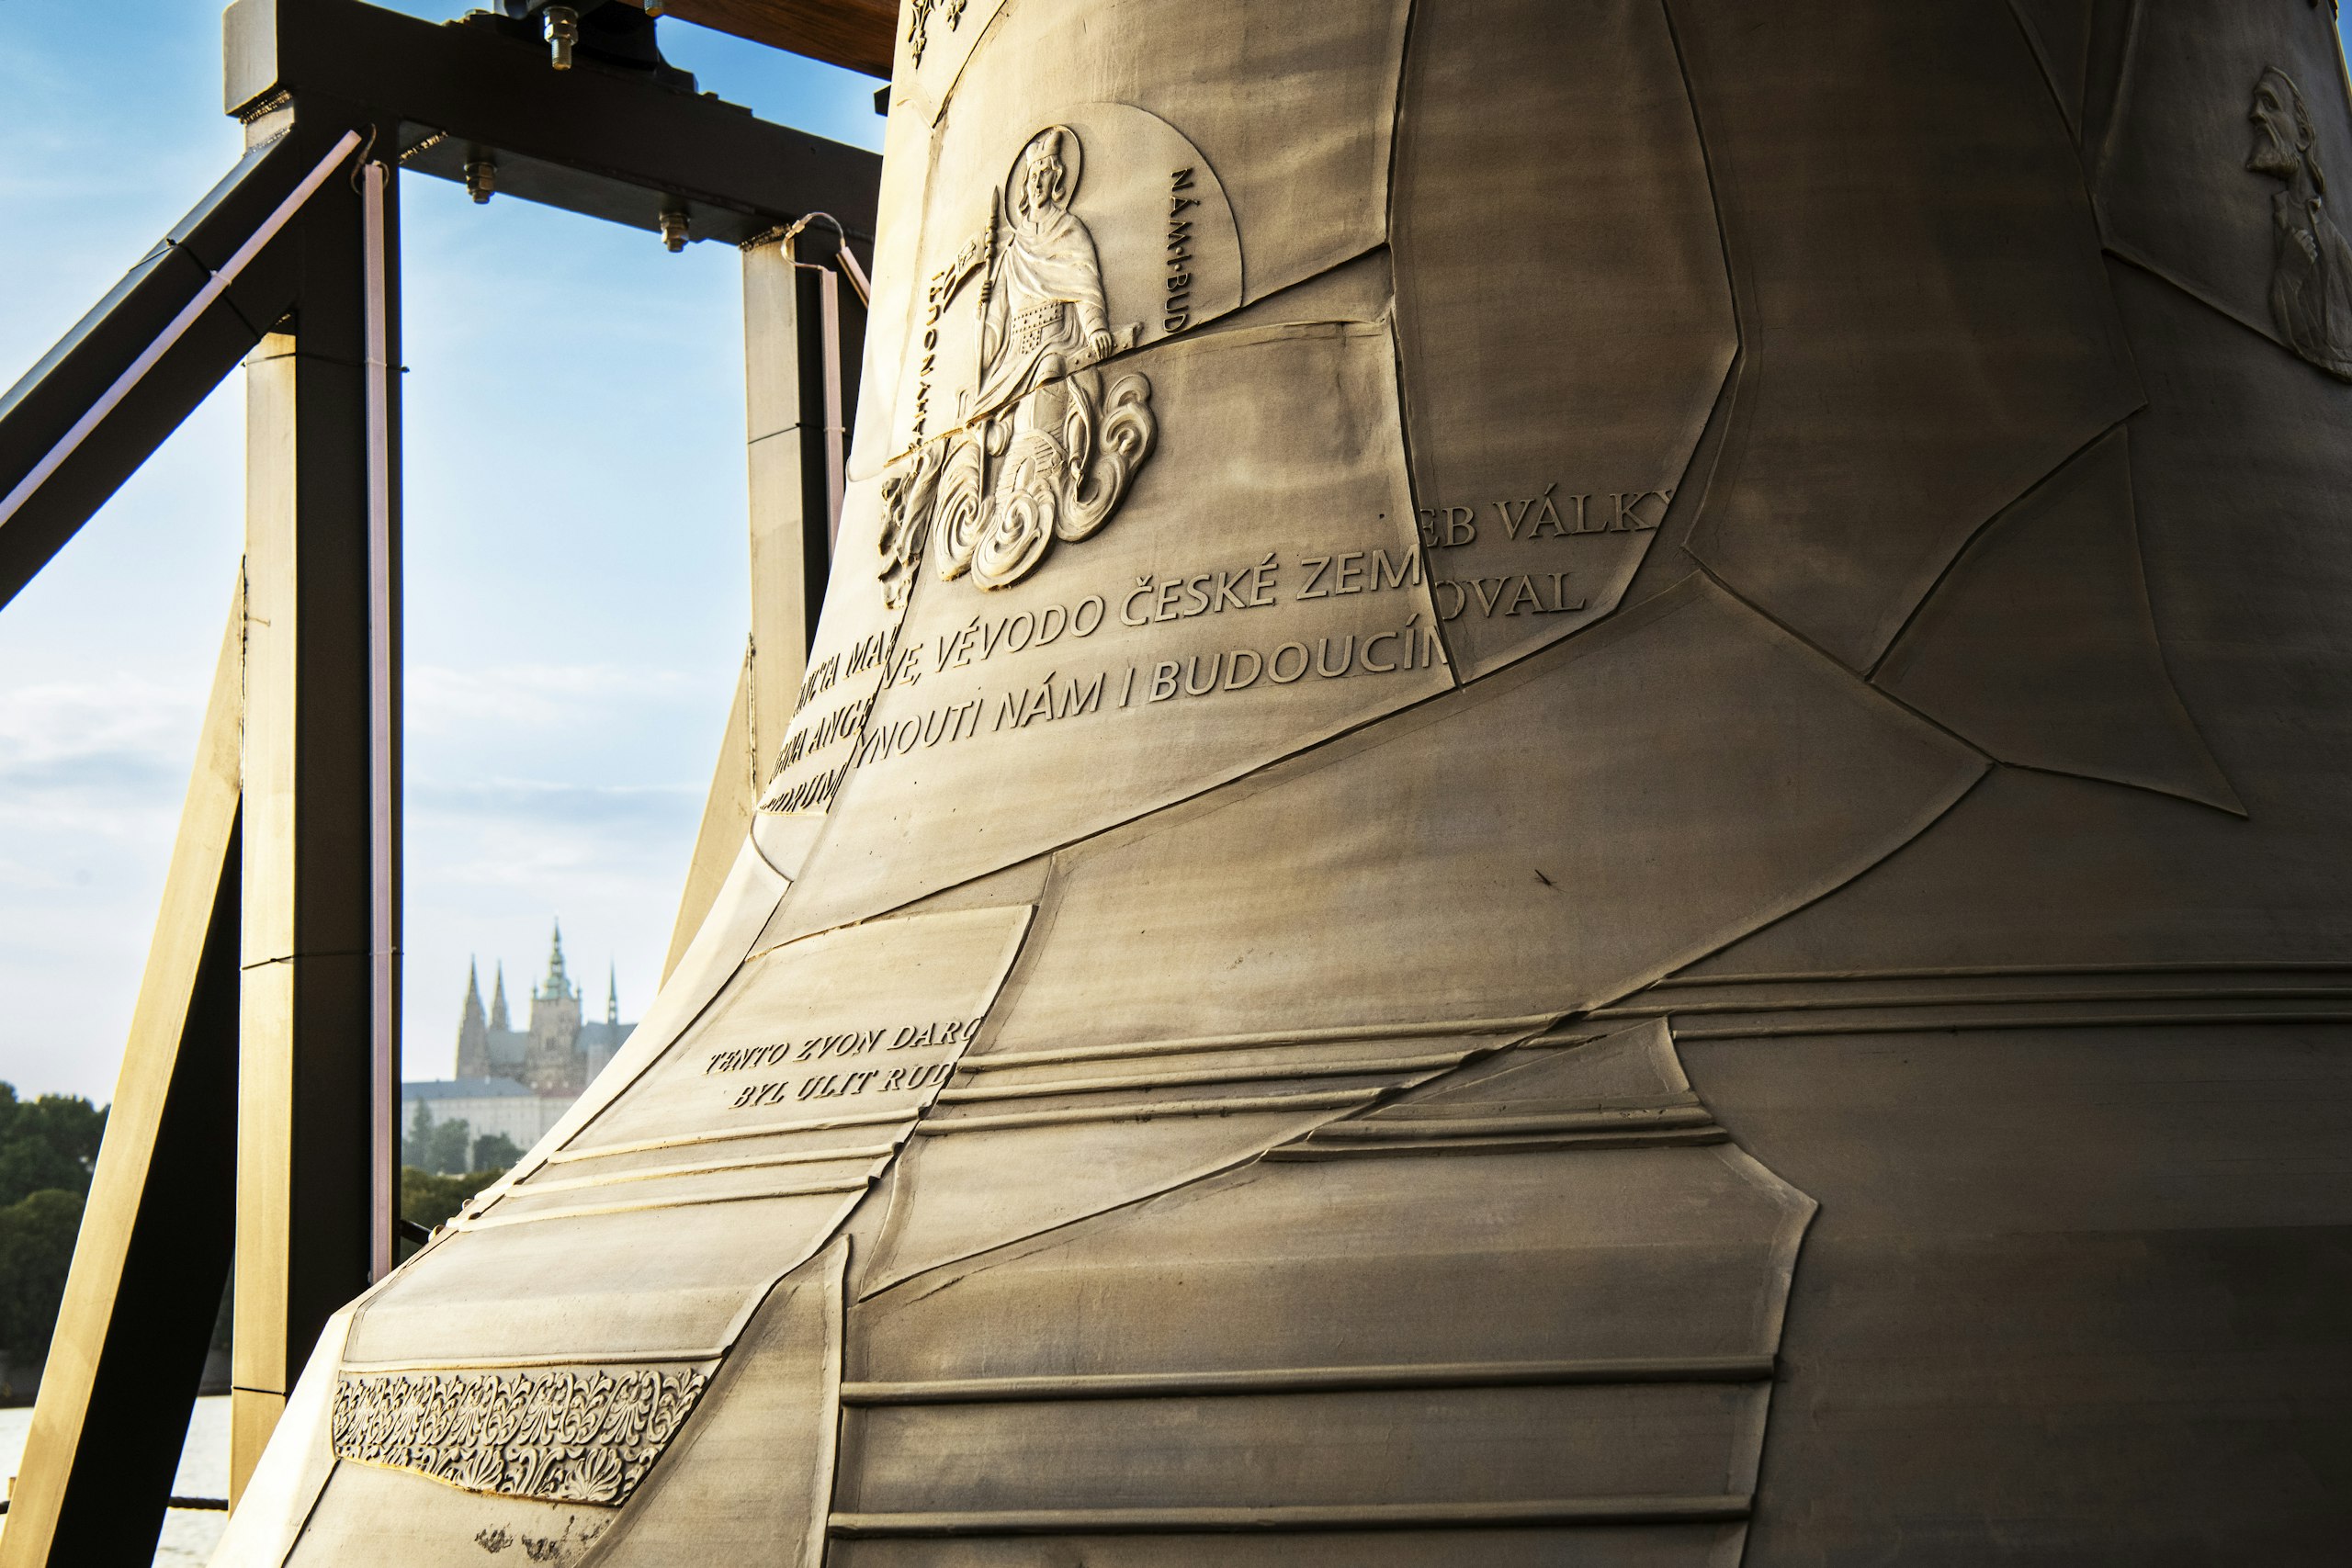 Plášť Zvonu #9081 je z jedné strany symbolicky poskládán ze střepů zvonů, které byly v roce 1942 odvezeny nacisty do Říše